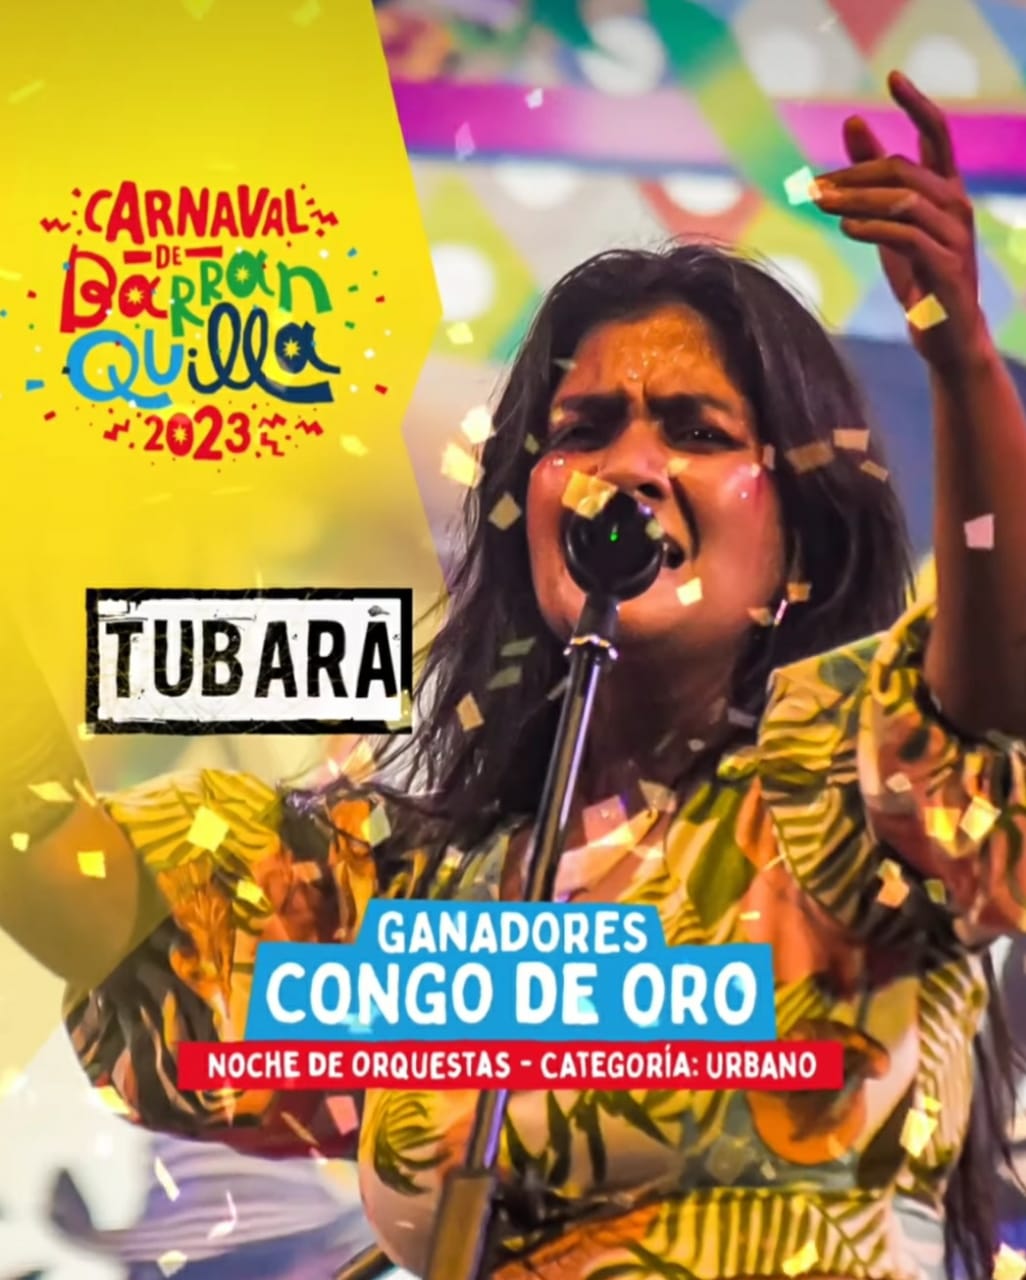 Tubara reggae ganadores del Congo de oro 2023